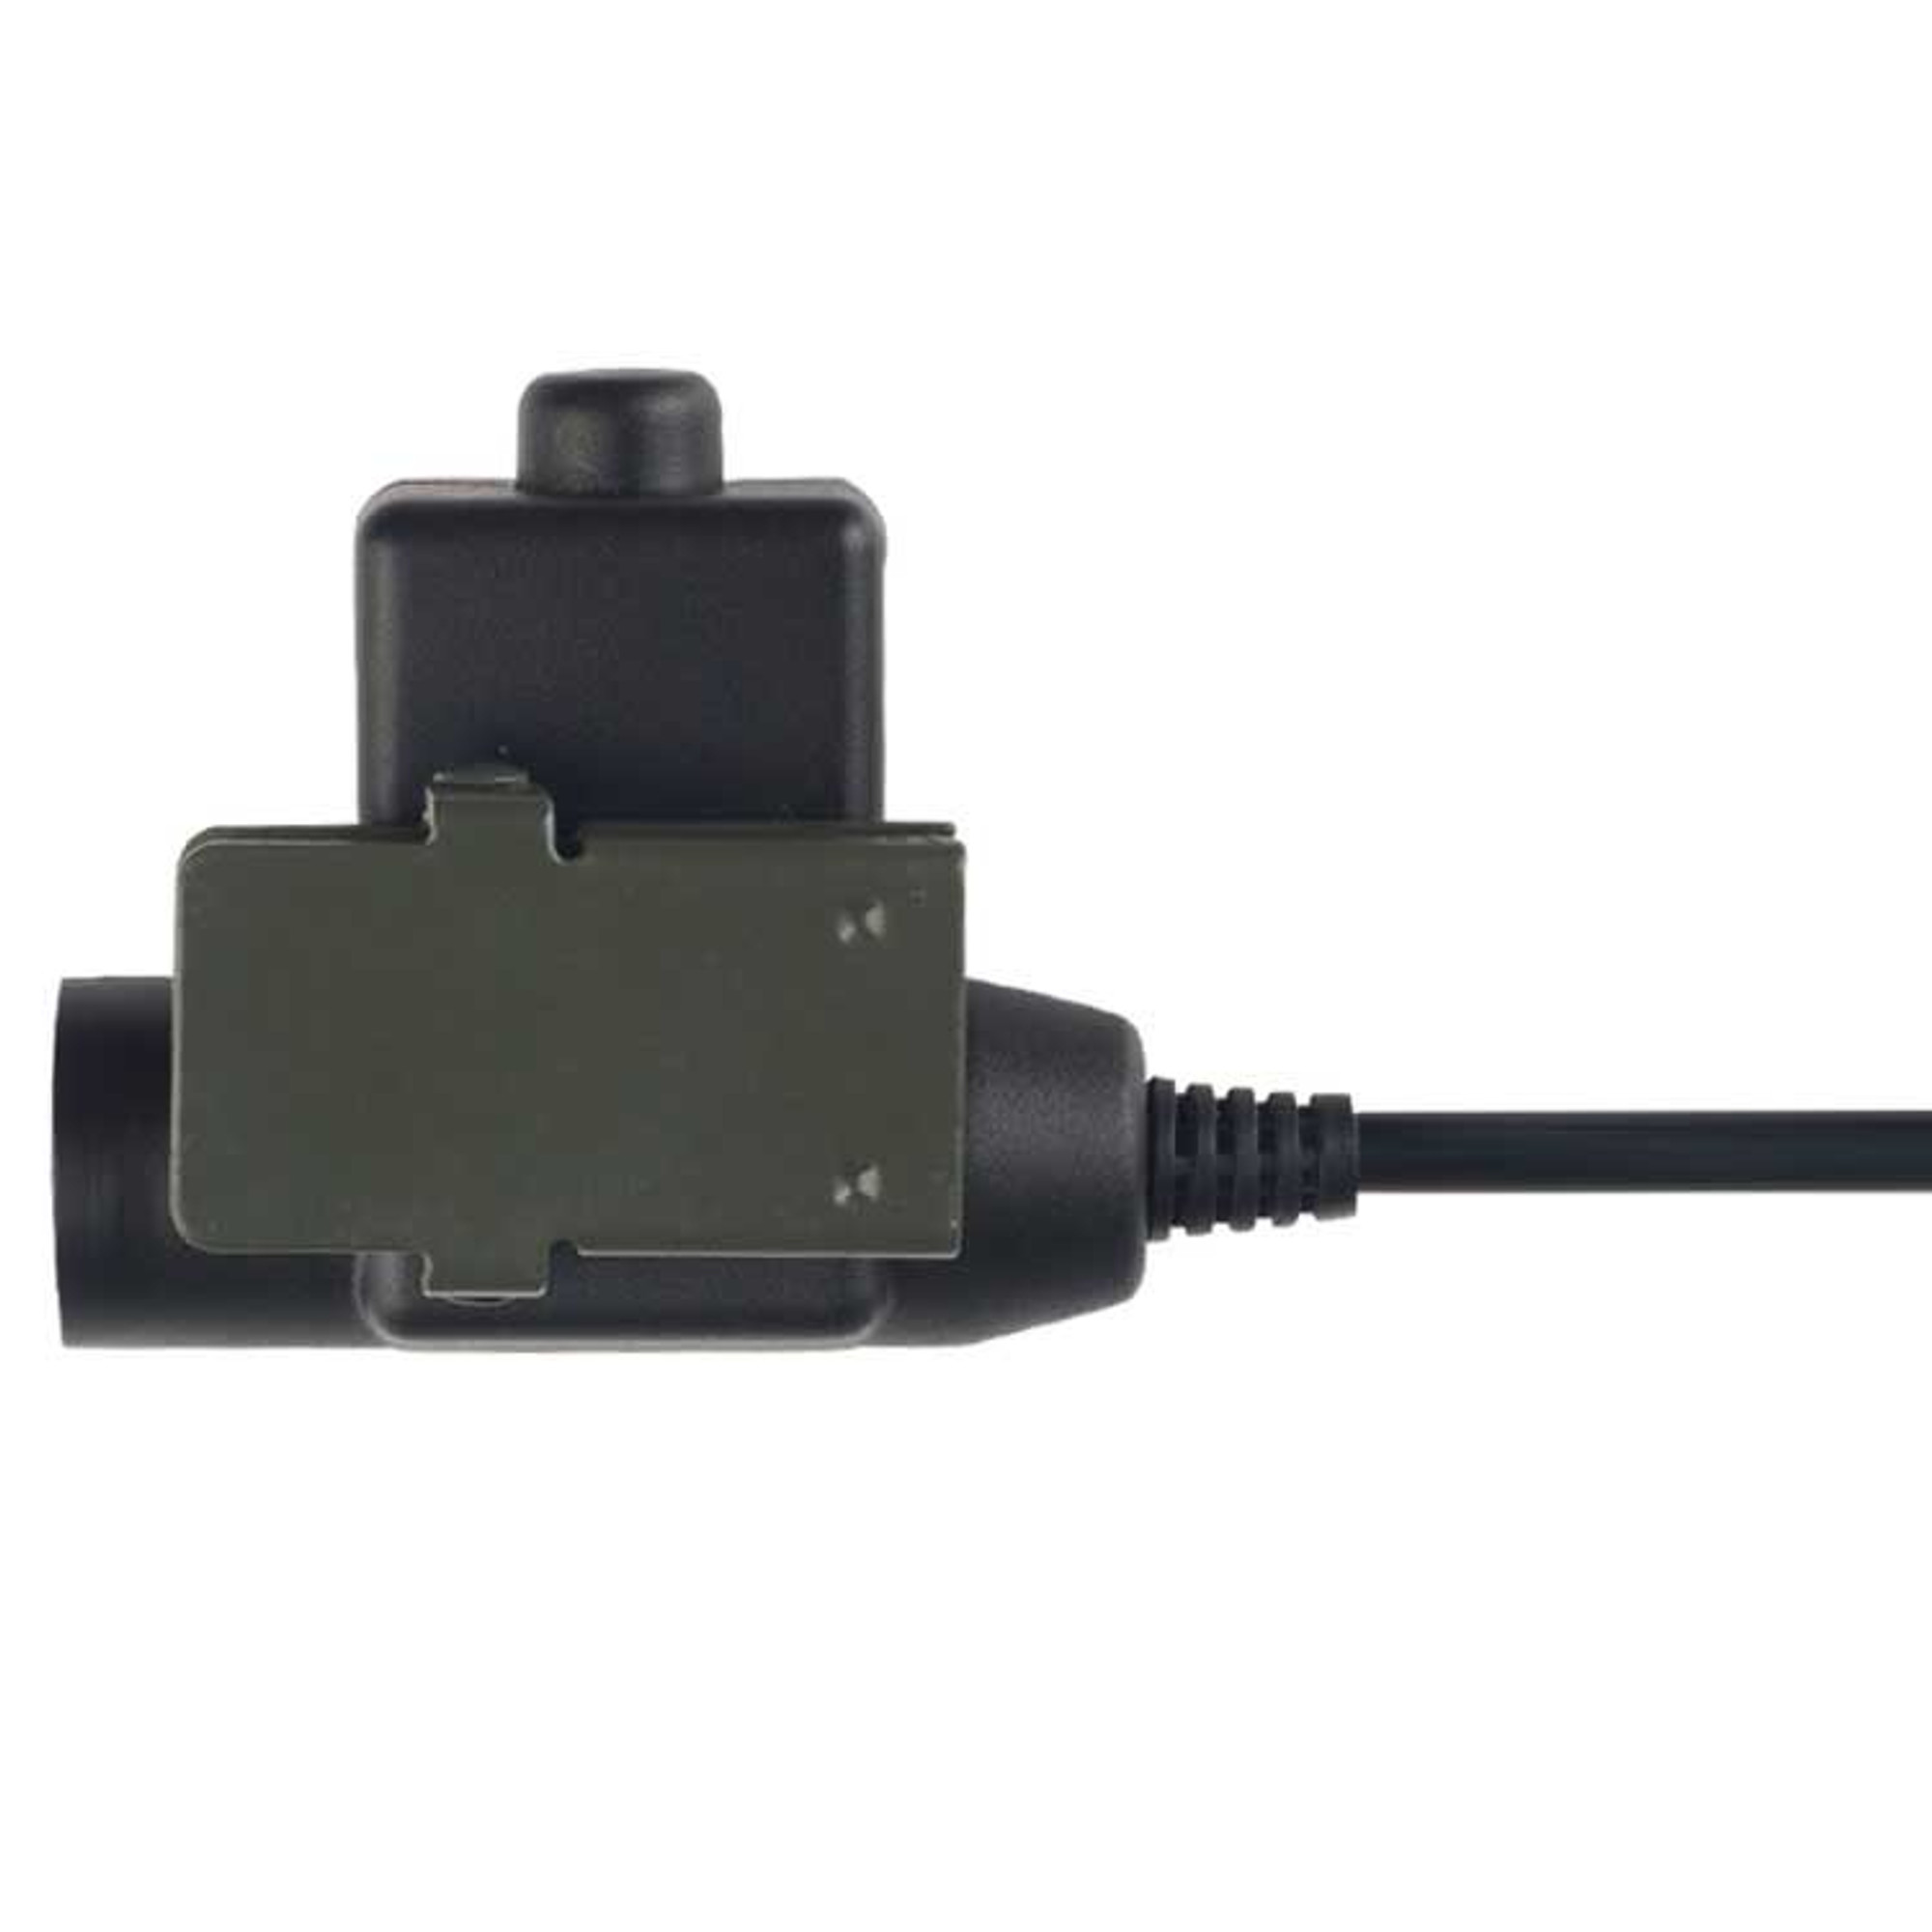 Matrix/Element U94 PTT Military Standard Version w/Headset Adapter - ICOM